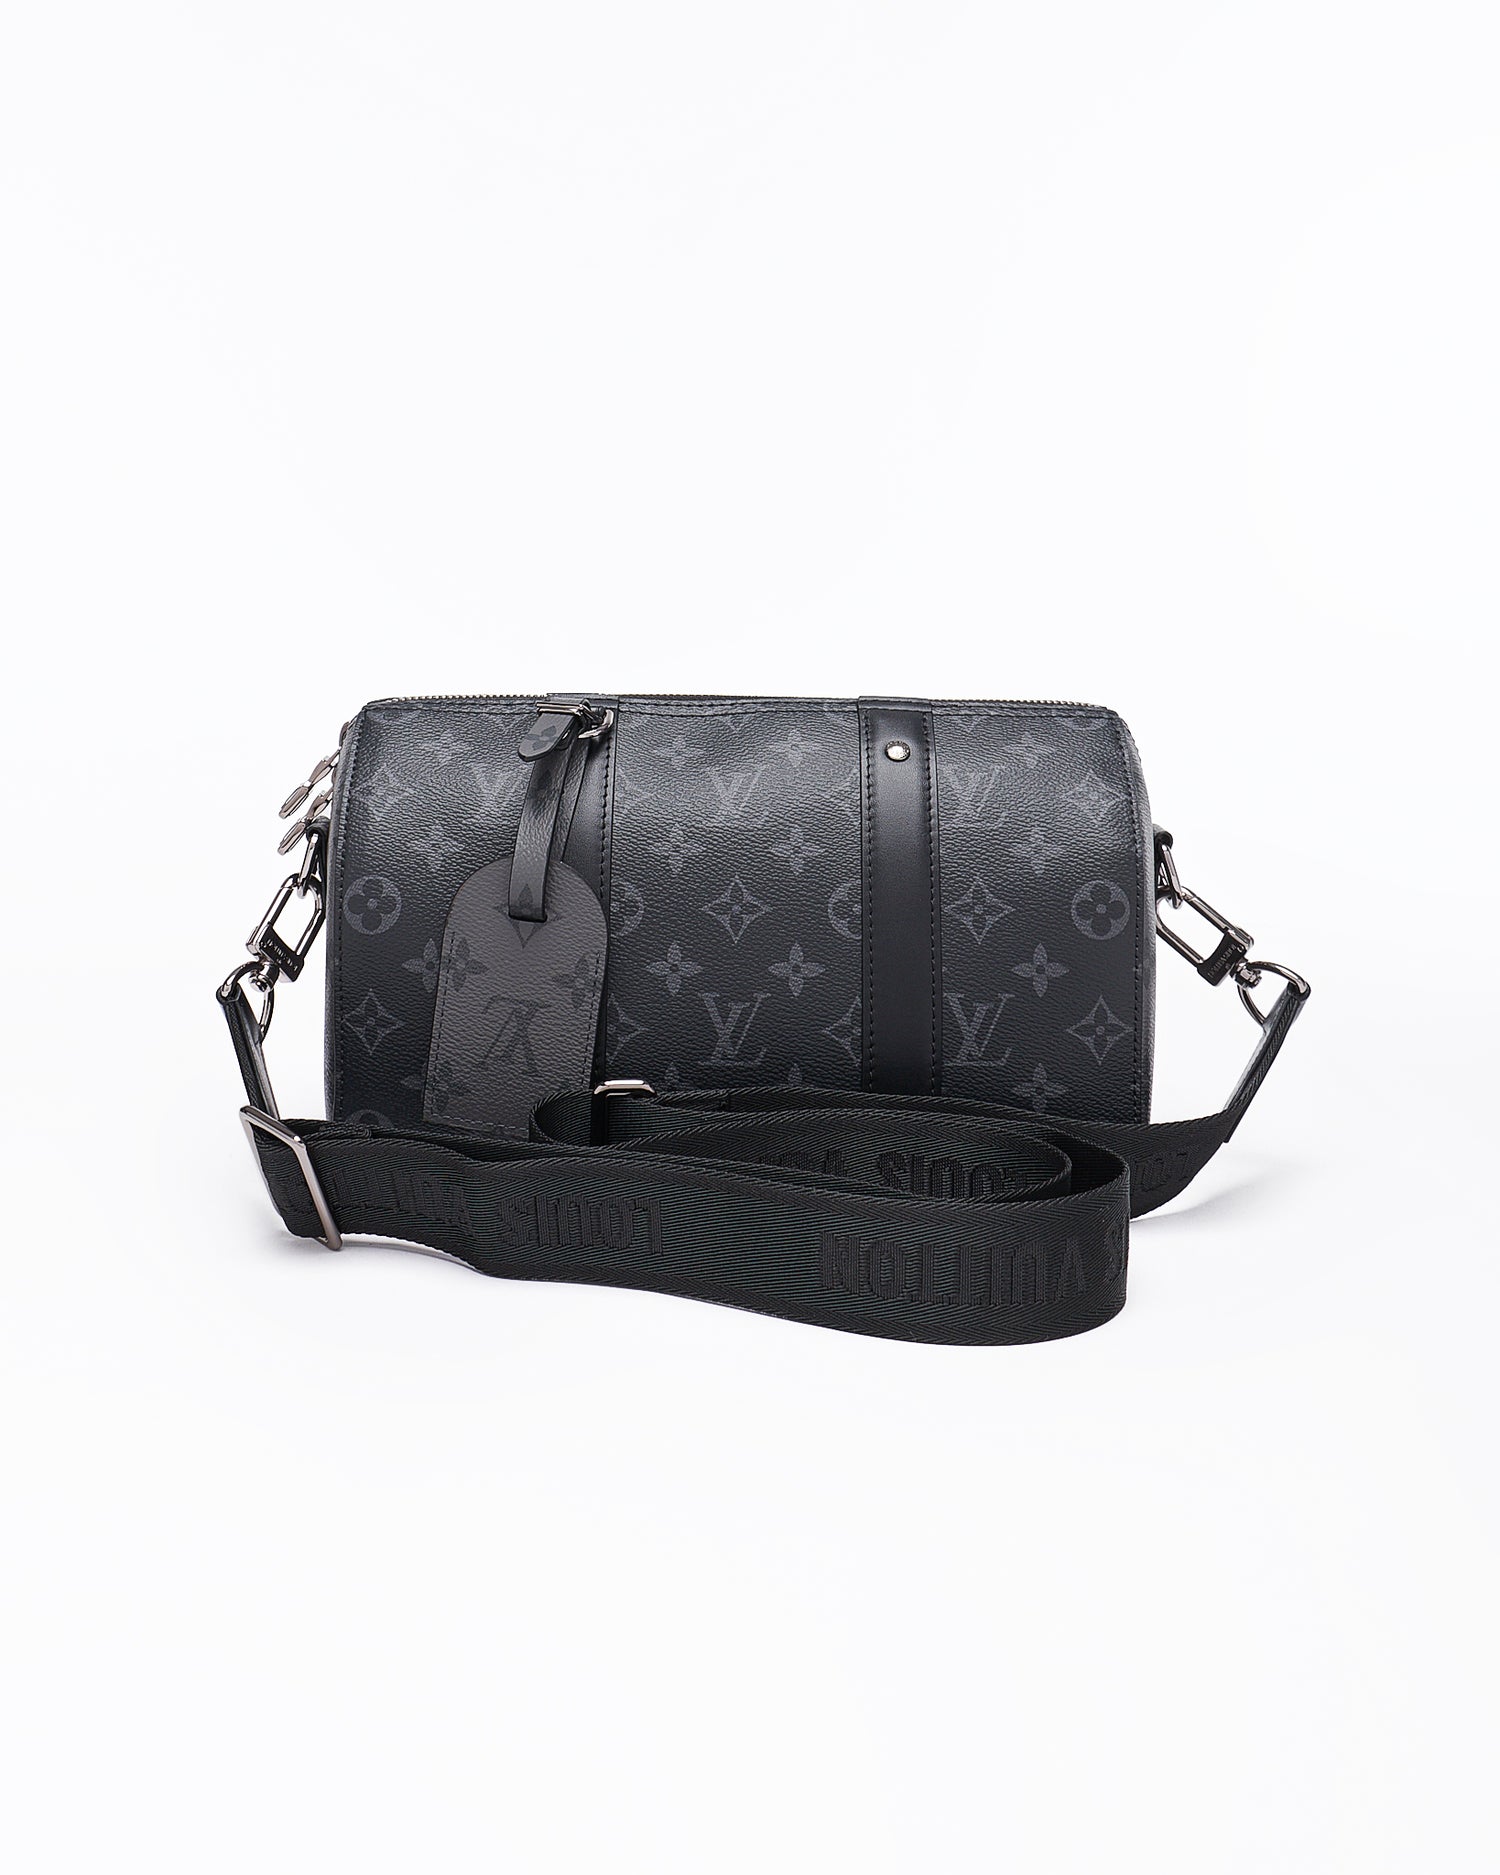 Louis Vuitton mini duffle bag  Mini duffle bag, Duffle bag, Duffle